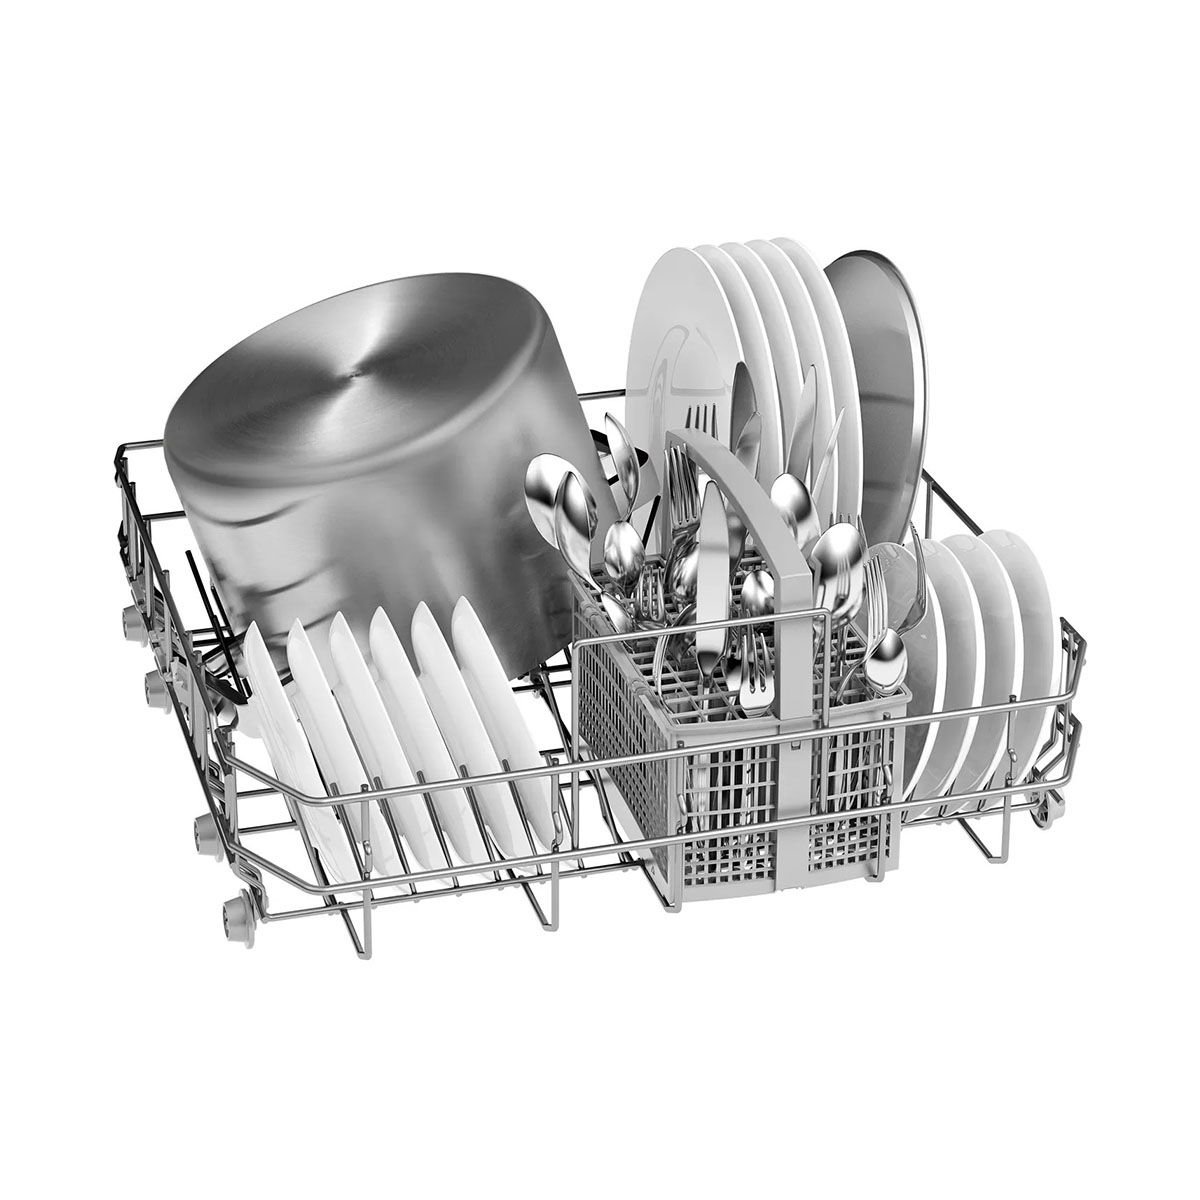 BOSCH เครื่องล้างจาน12ชุด รุ่น SMS23BW01T